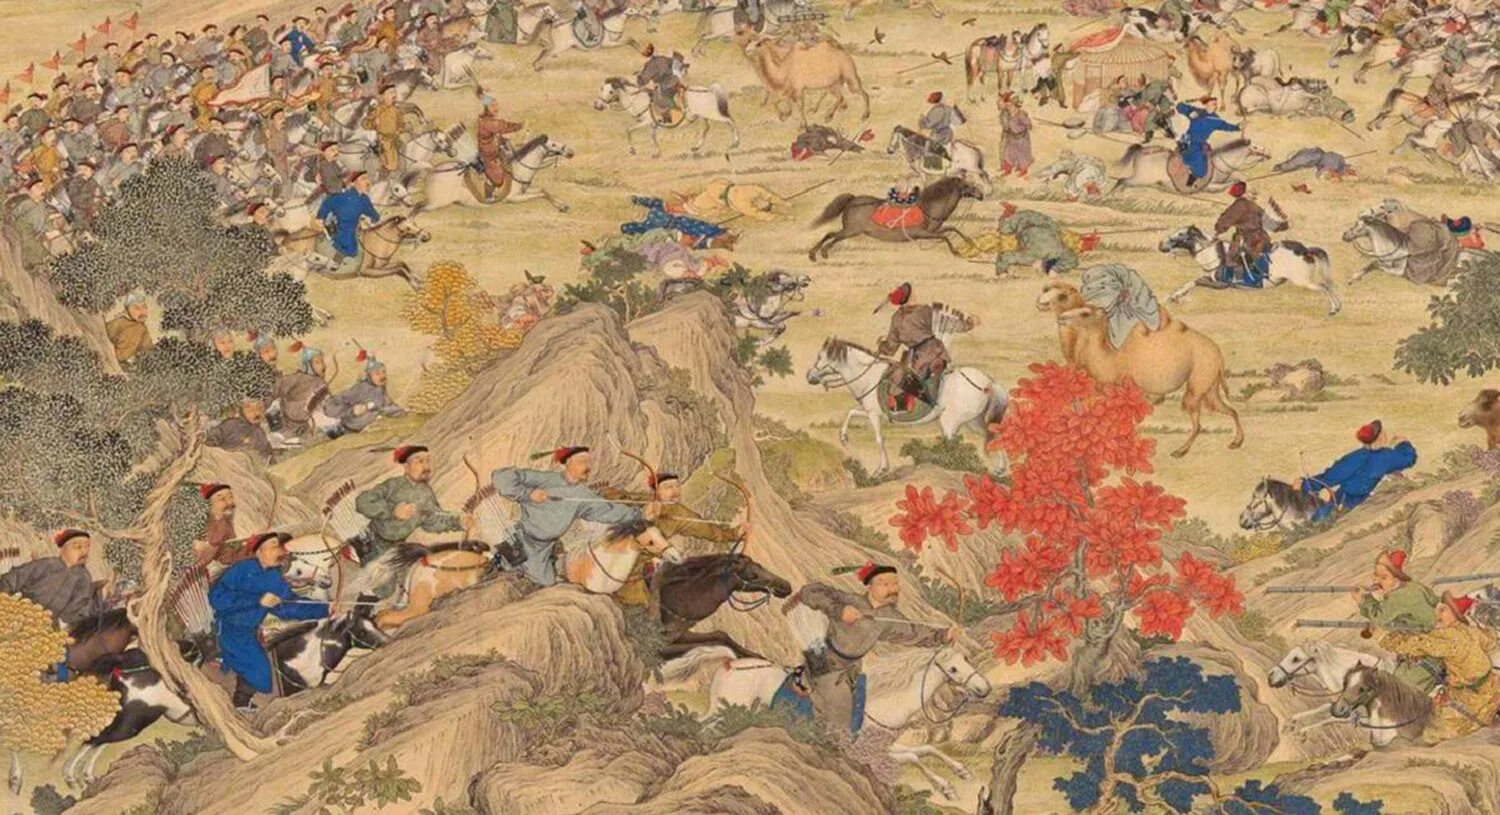 Начало завоевания империи цзинь. Маньчжурское завоевание Китая. Империя Цин. Маньчжурское завоевание Китая 1618. Китай 18 век маньчжурская Династия. Династия Цин в Китае 18 век.